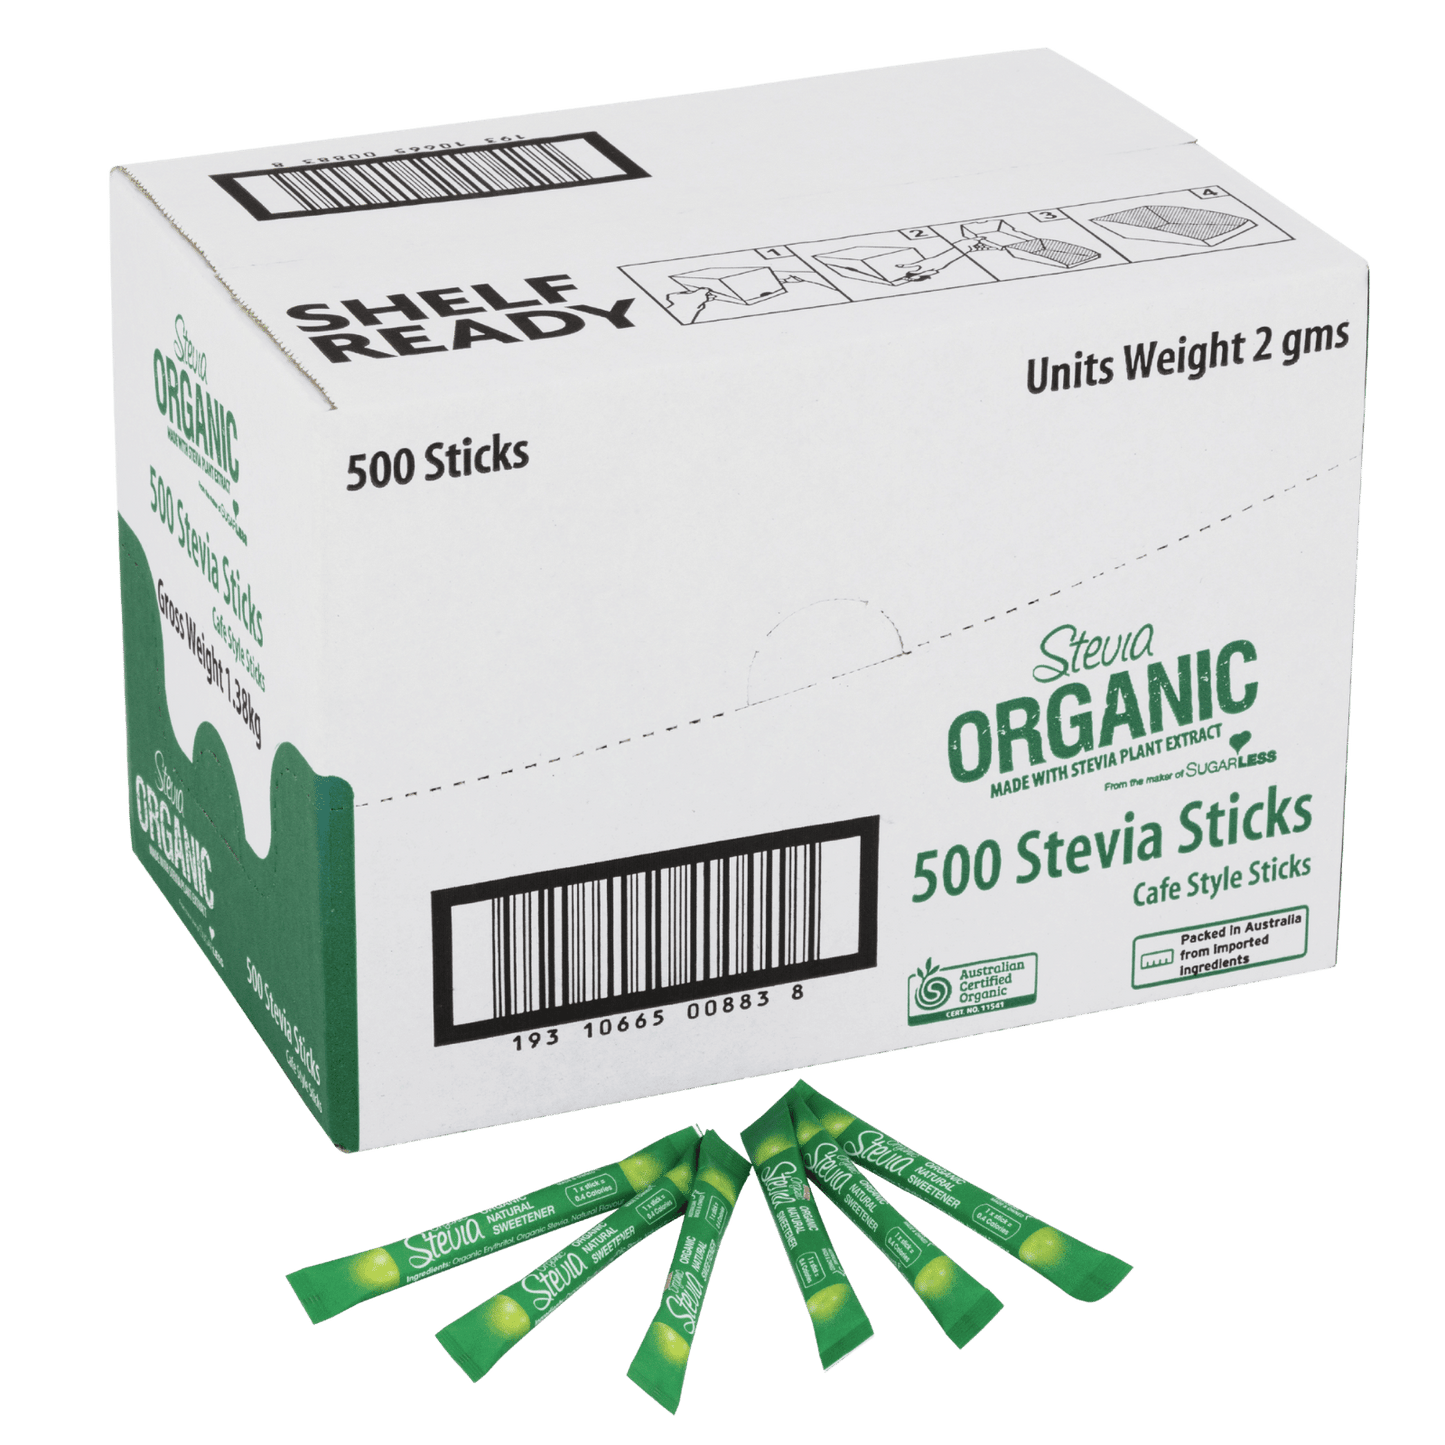 Sugarless Stevia Organic Café Sticks